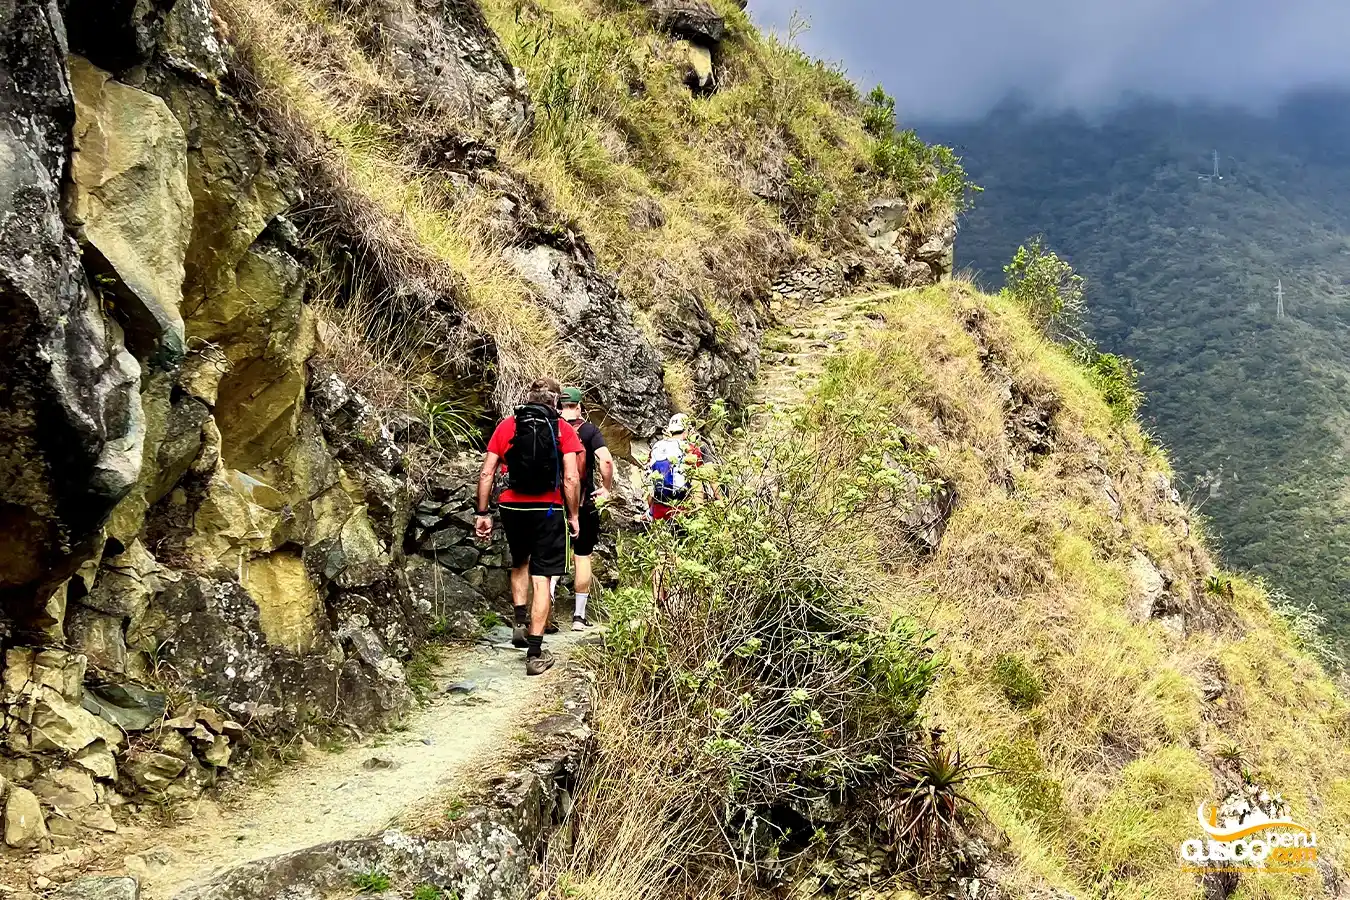 Inca Trail to Machu Picchu. Source: CuscoPeru.com